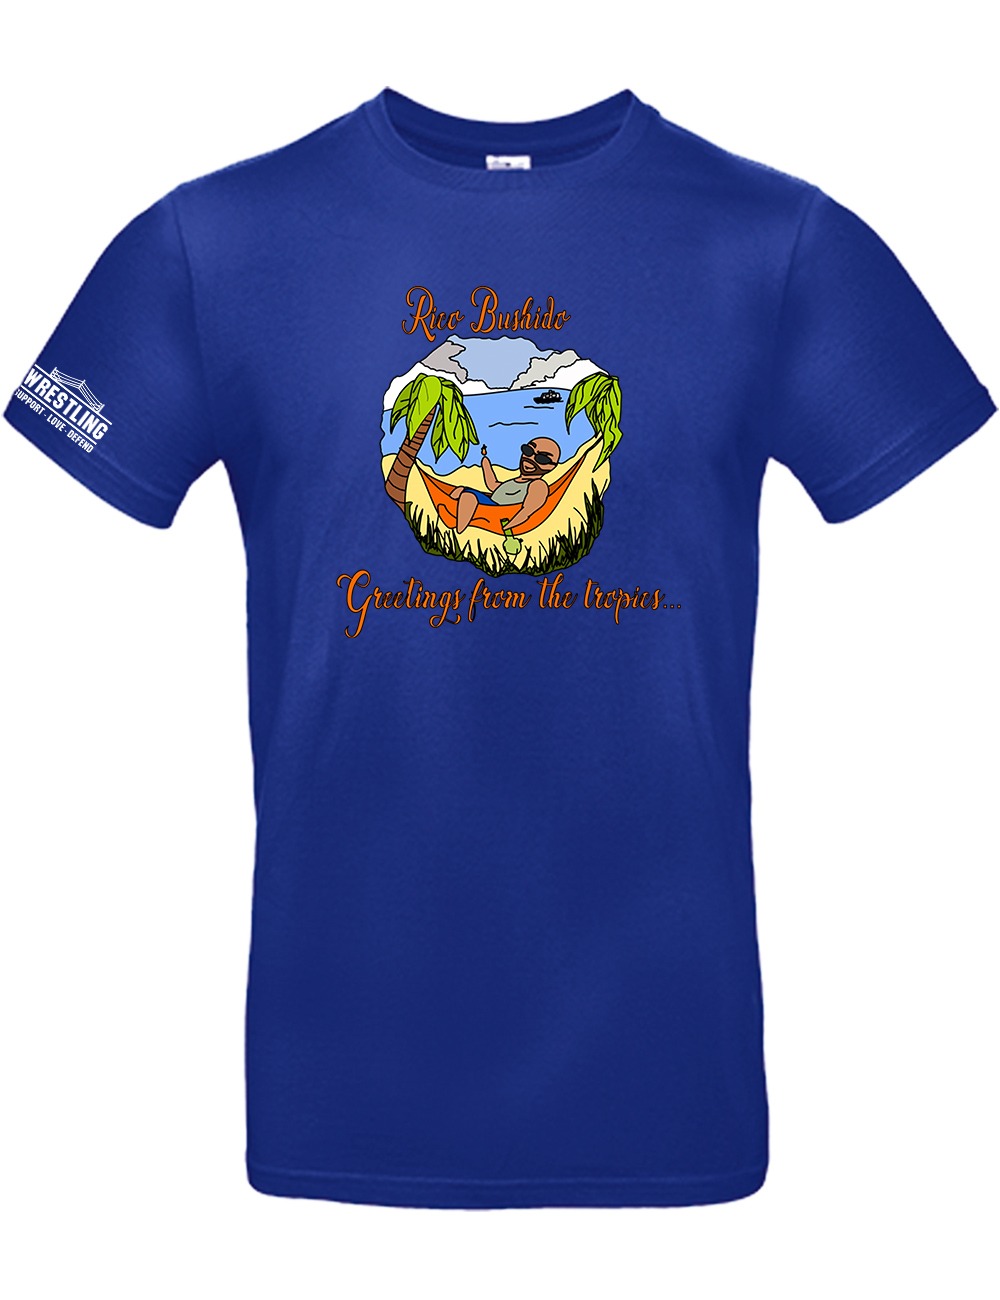 T-Shirt - Rico Bushido - Greetings from the tropics - SL-WRESTLING